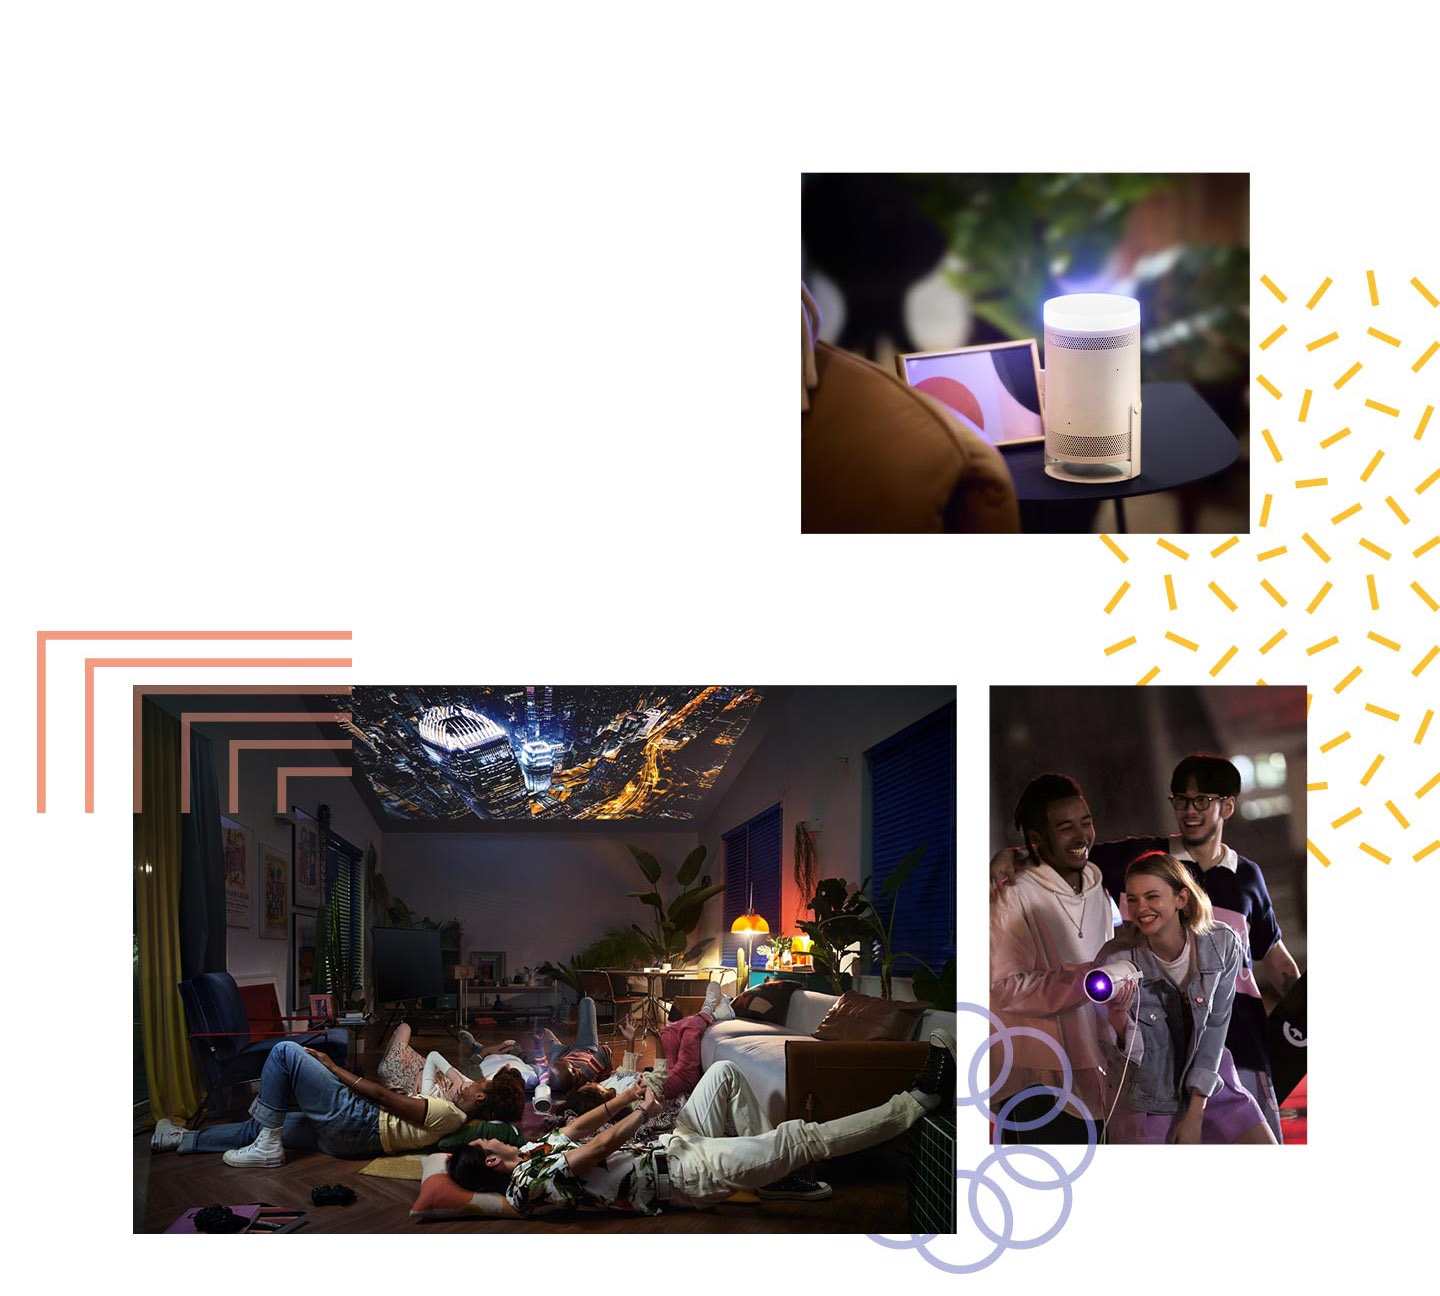 Портативный проектор Samsung The Freestyle в интерьерах в различном применении